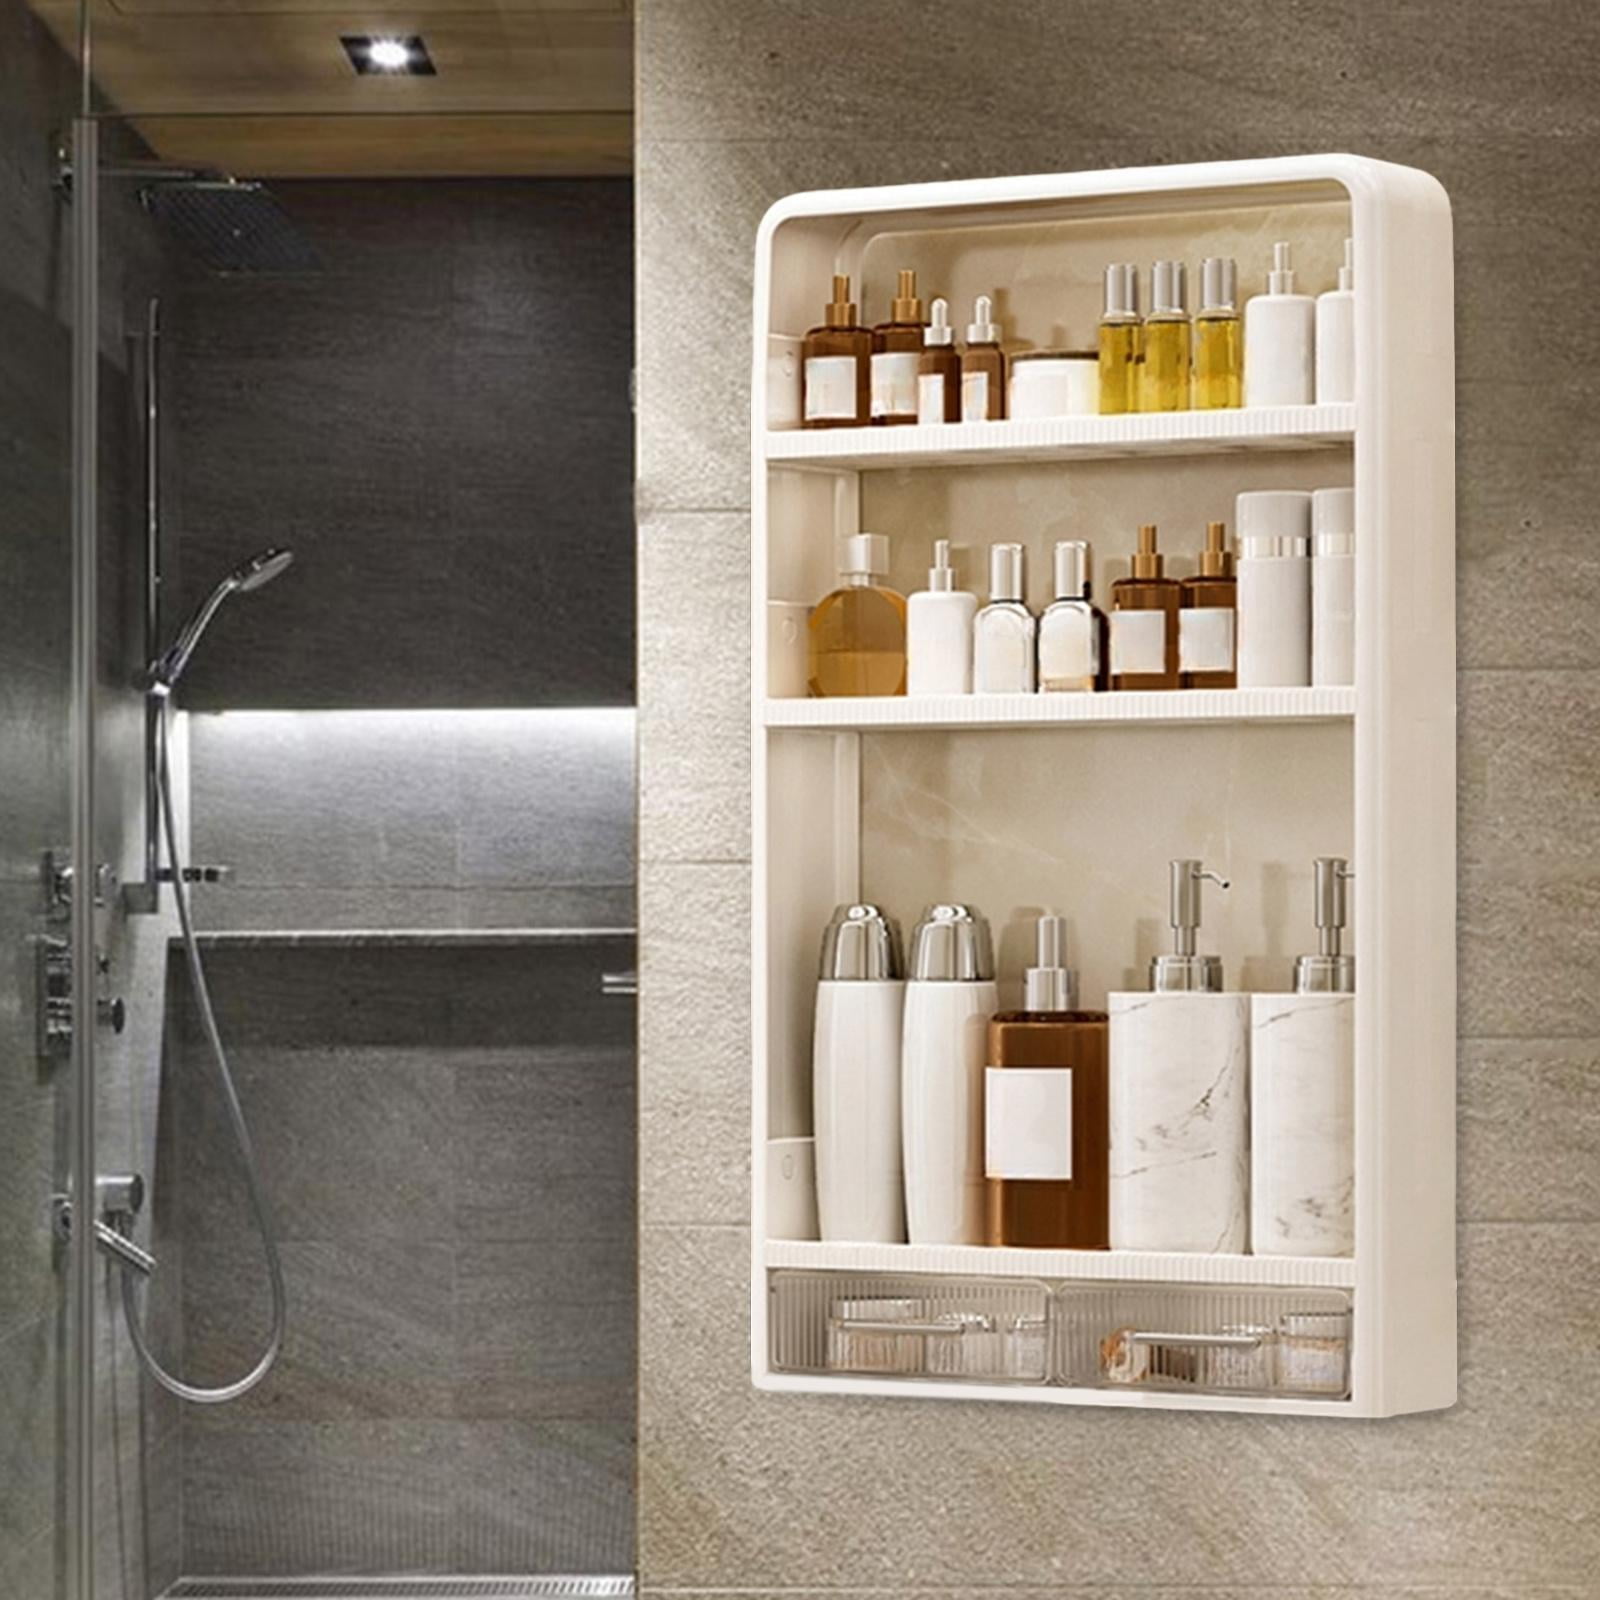 Wall Floating Shelves for Skincare Bathroom Shelf Organizer Toilet